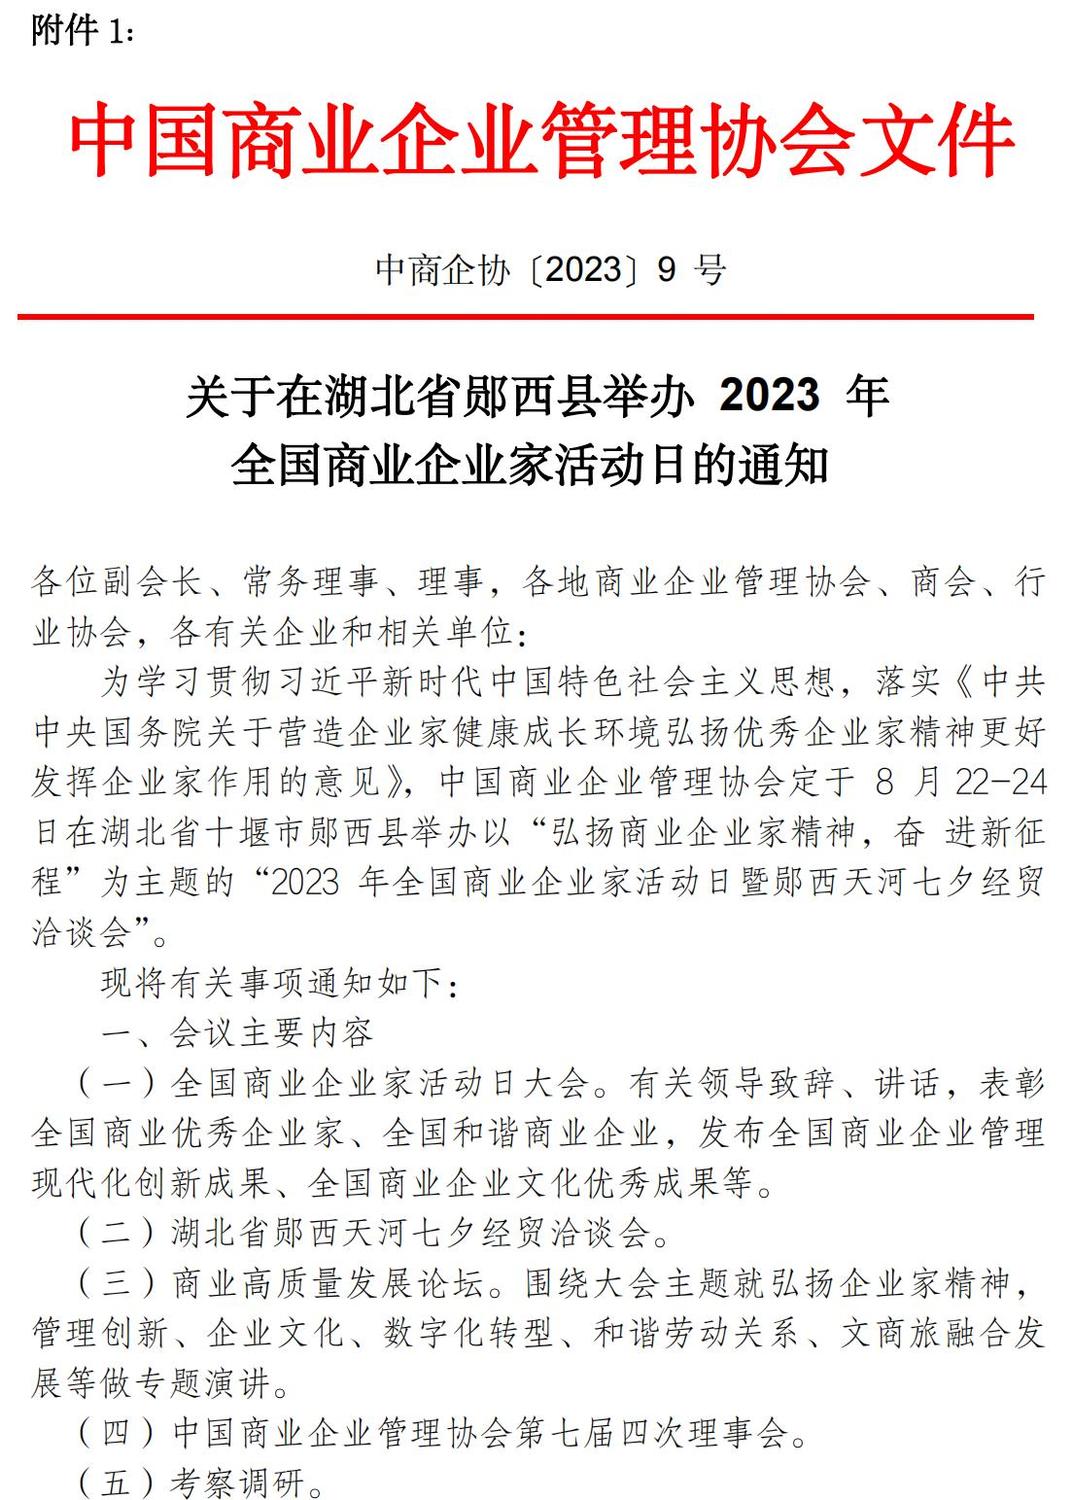 2023中国商业企业家活动日的通知_01.jpg